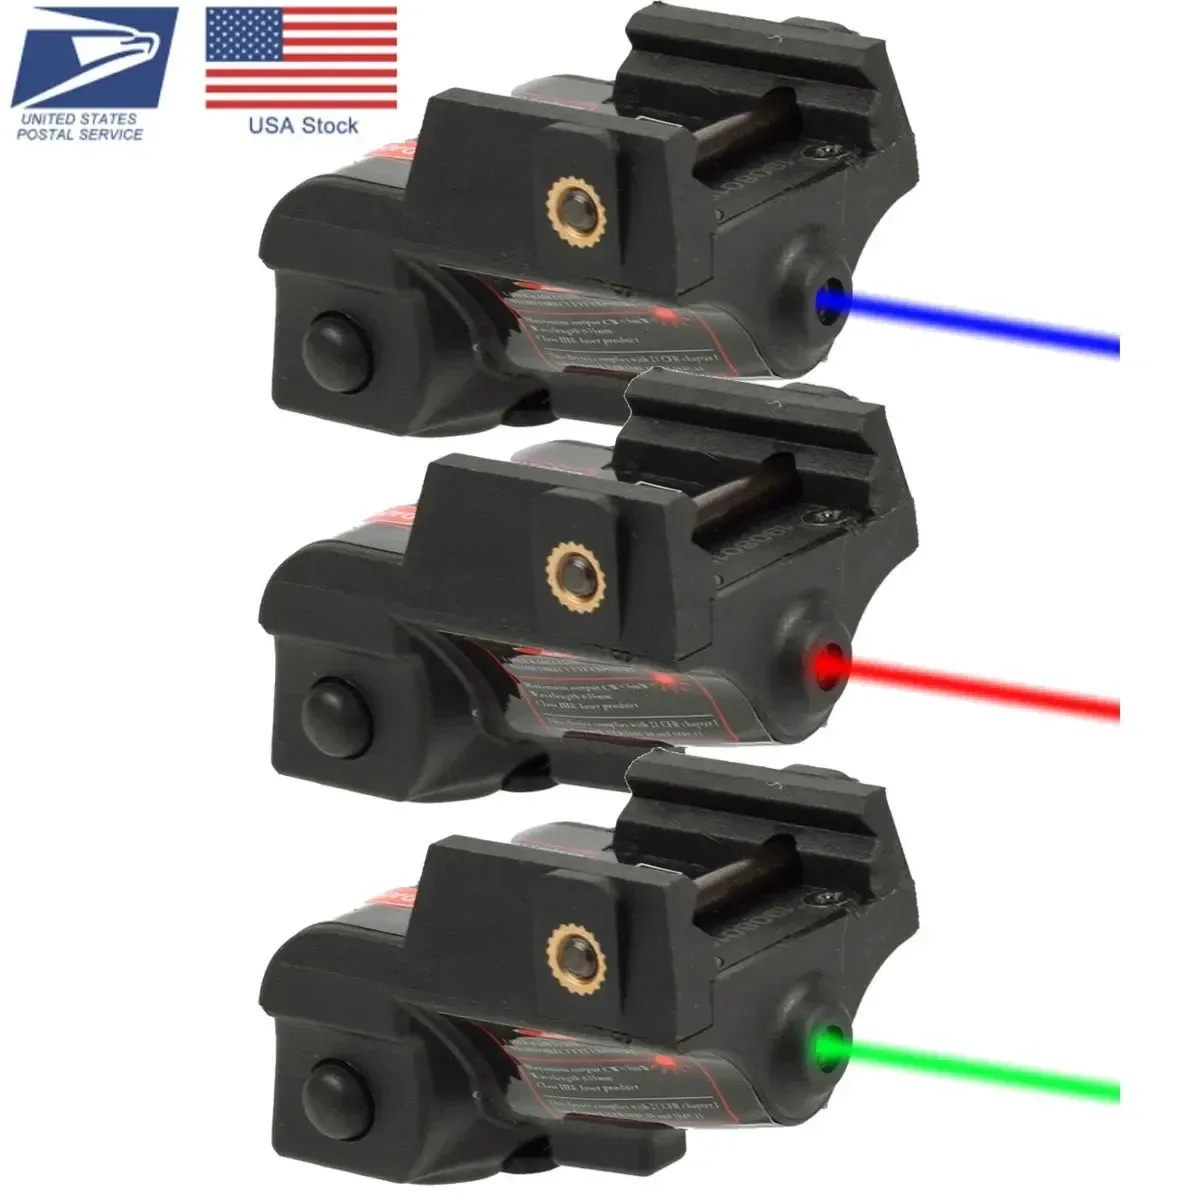 Optics Glock Laser Sehung Taurus G2C G3 Toro Pistola Grüne blaue rote Laser Waffen Bohrung Pistole für PT111 1911 Beretta PX4 Pistole